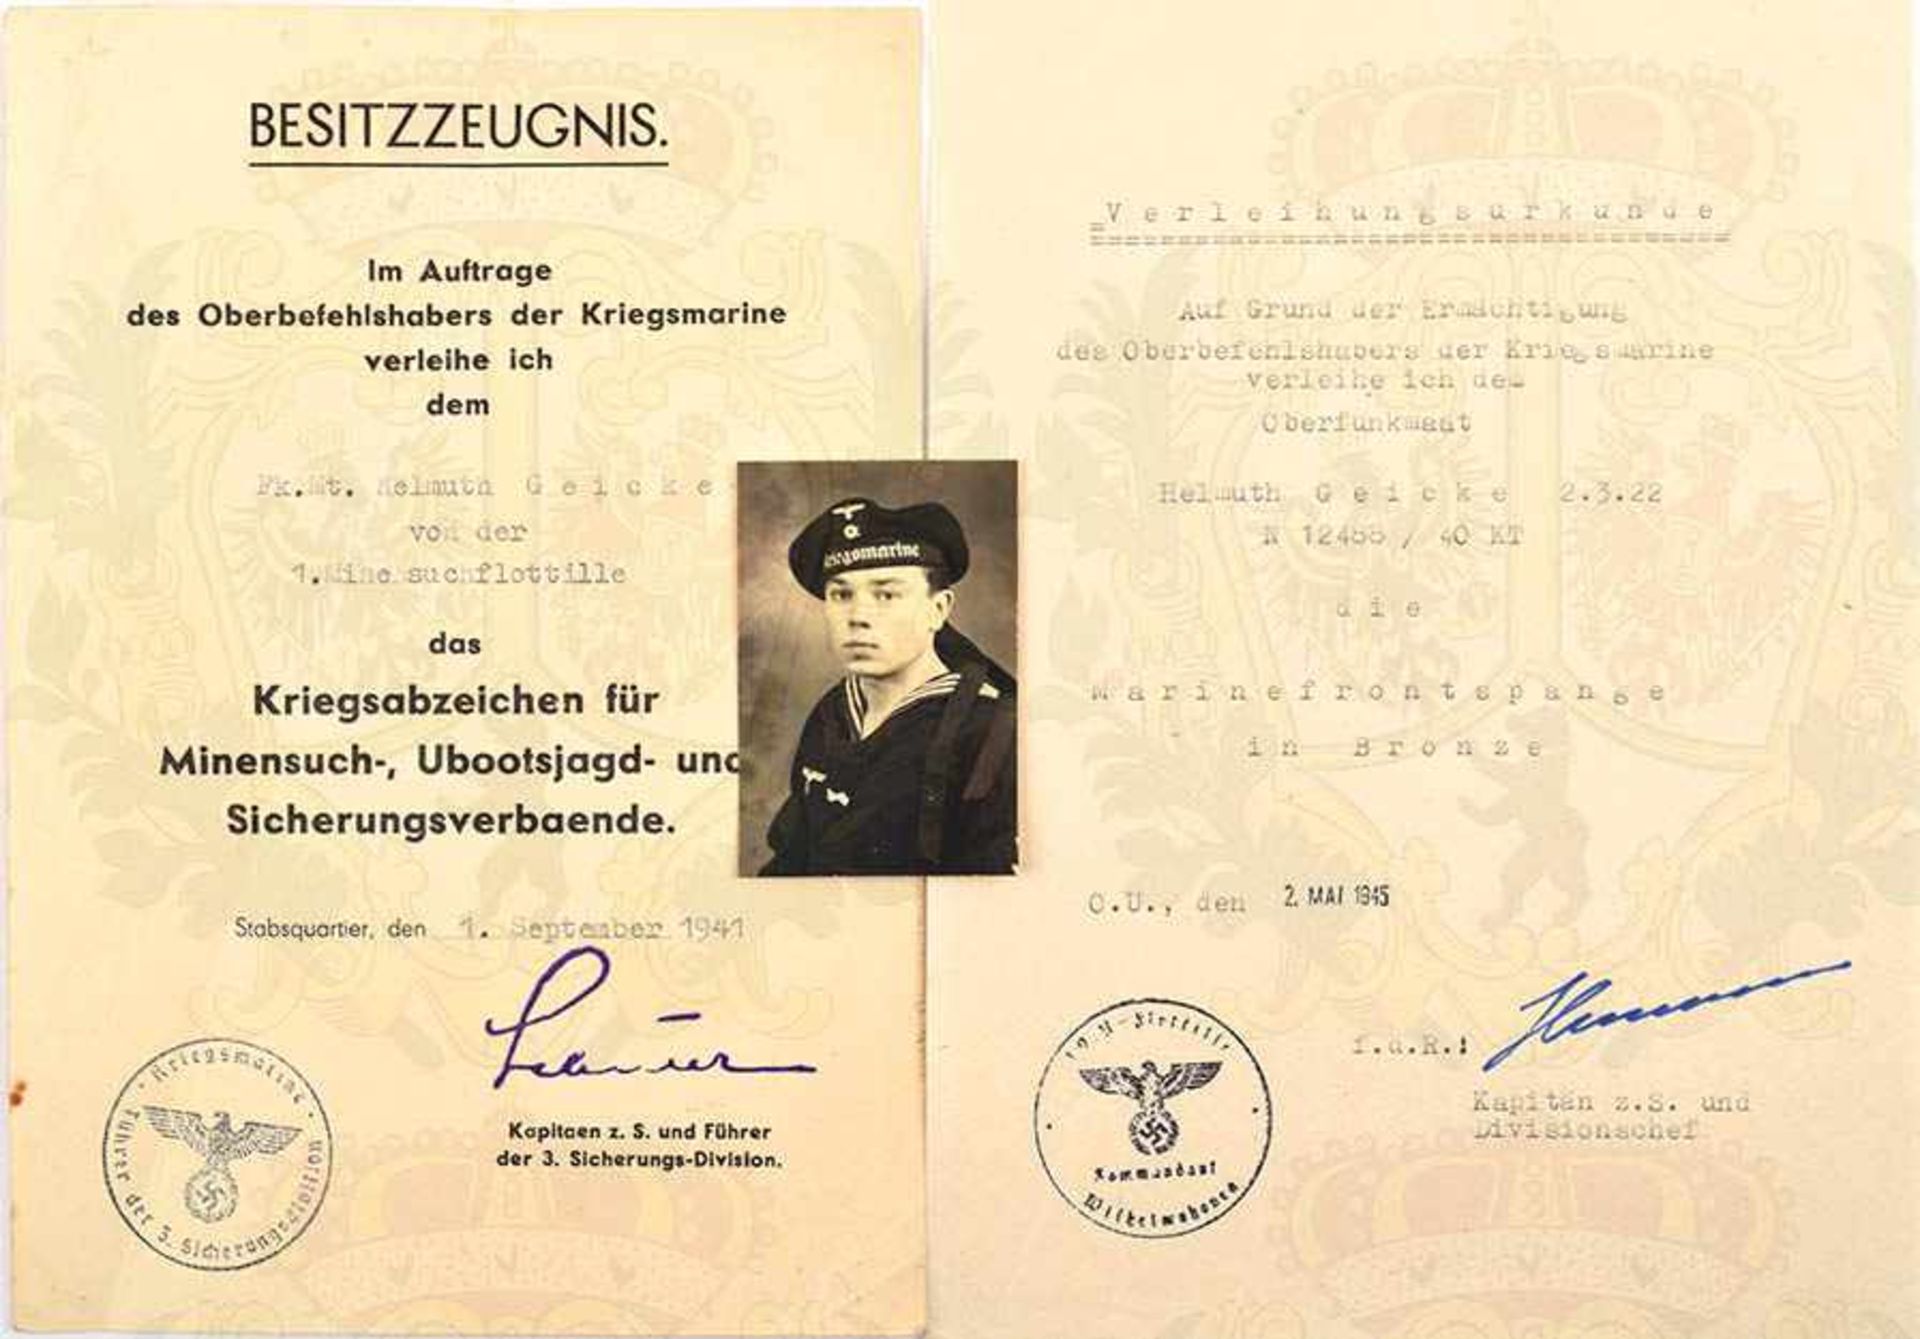 URKUNDENGRUPPE EINES OBERFUNKMAATEN, VU z. Minensucherabzeichen, (1. MS-Flottille), 1. Sept. 1941,